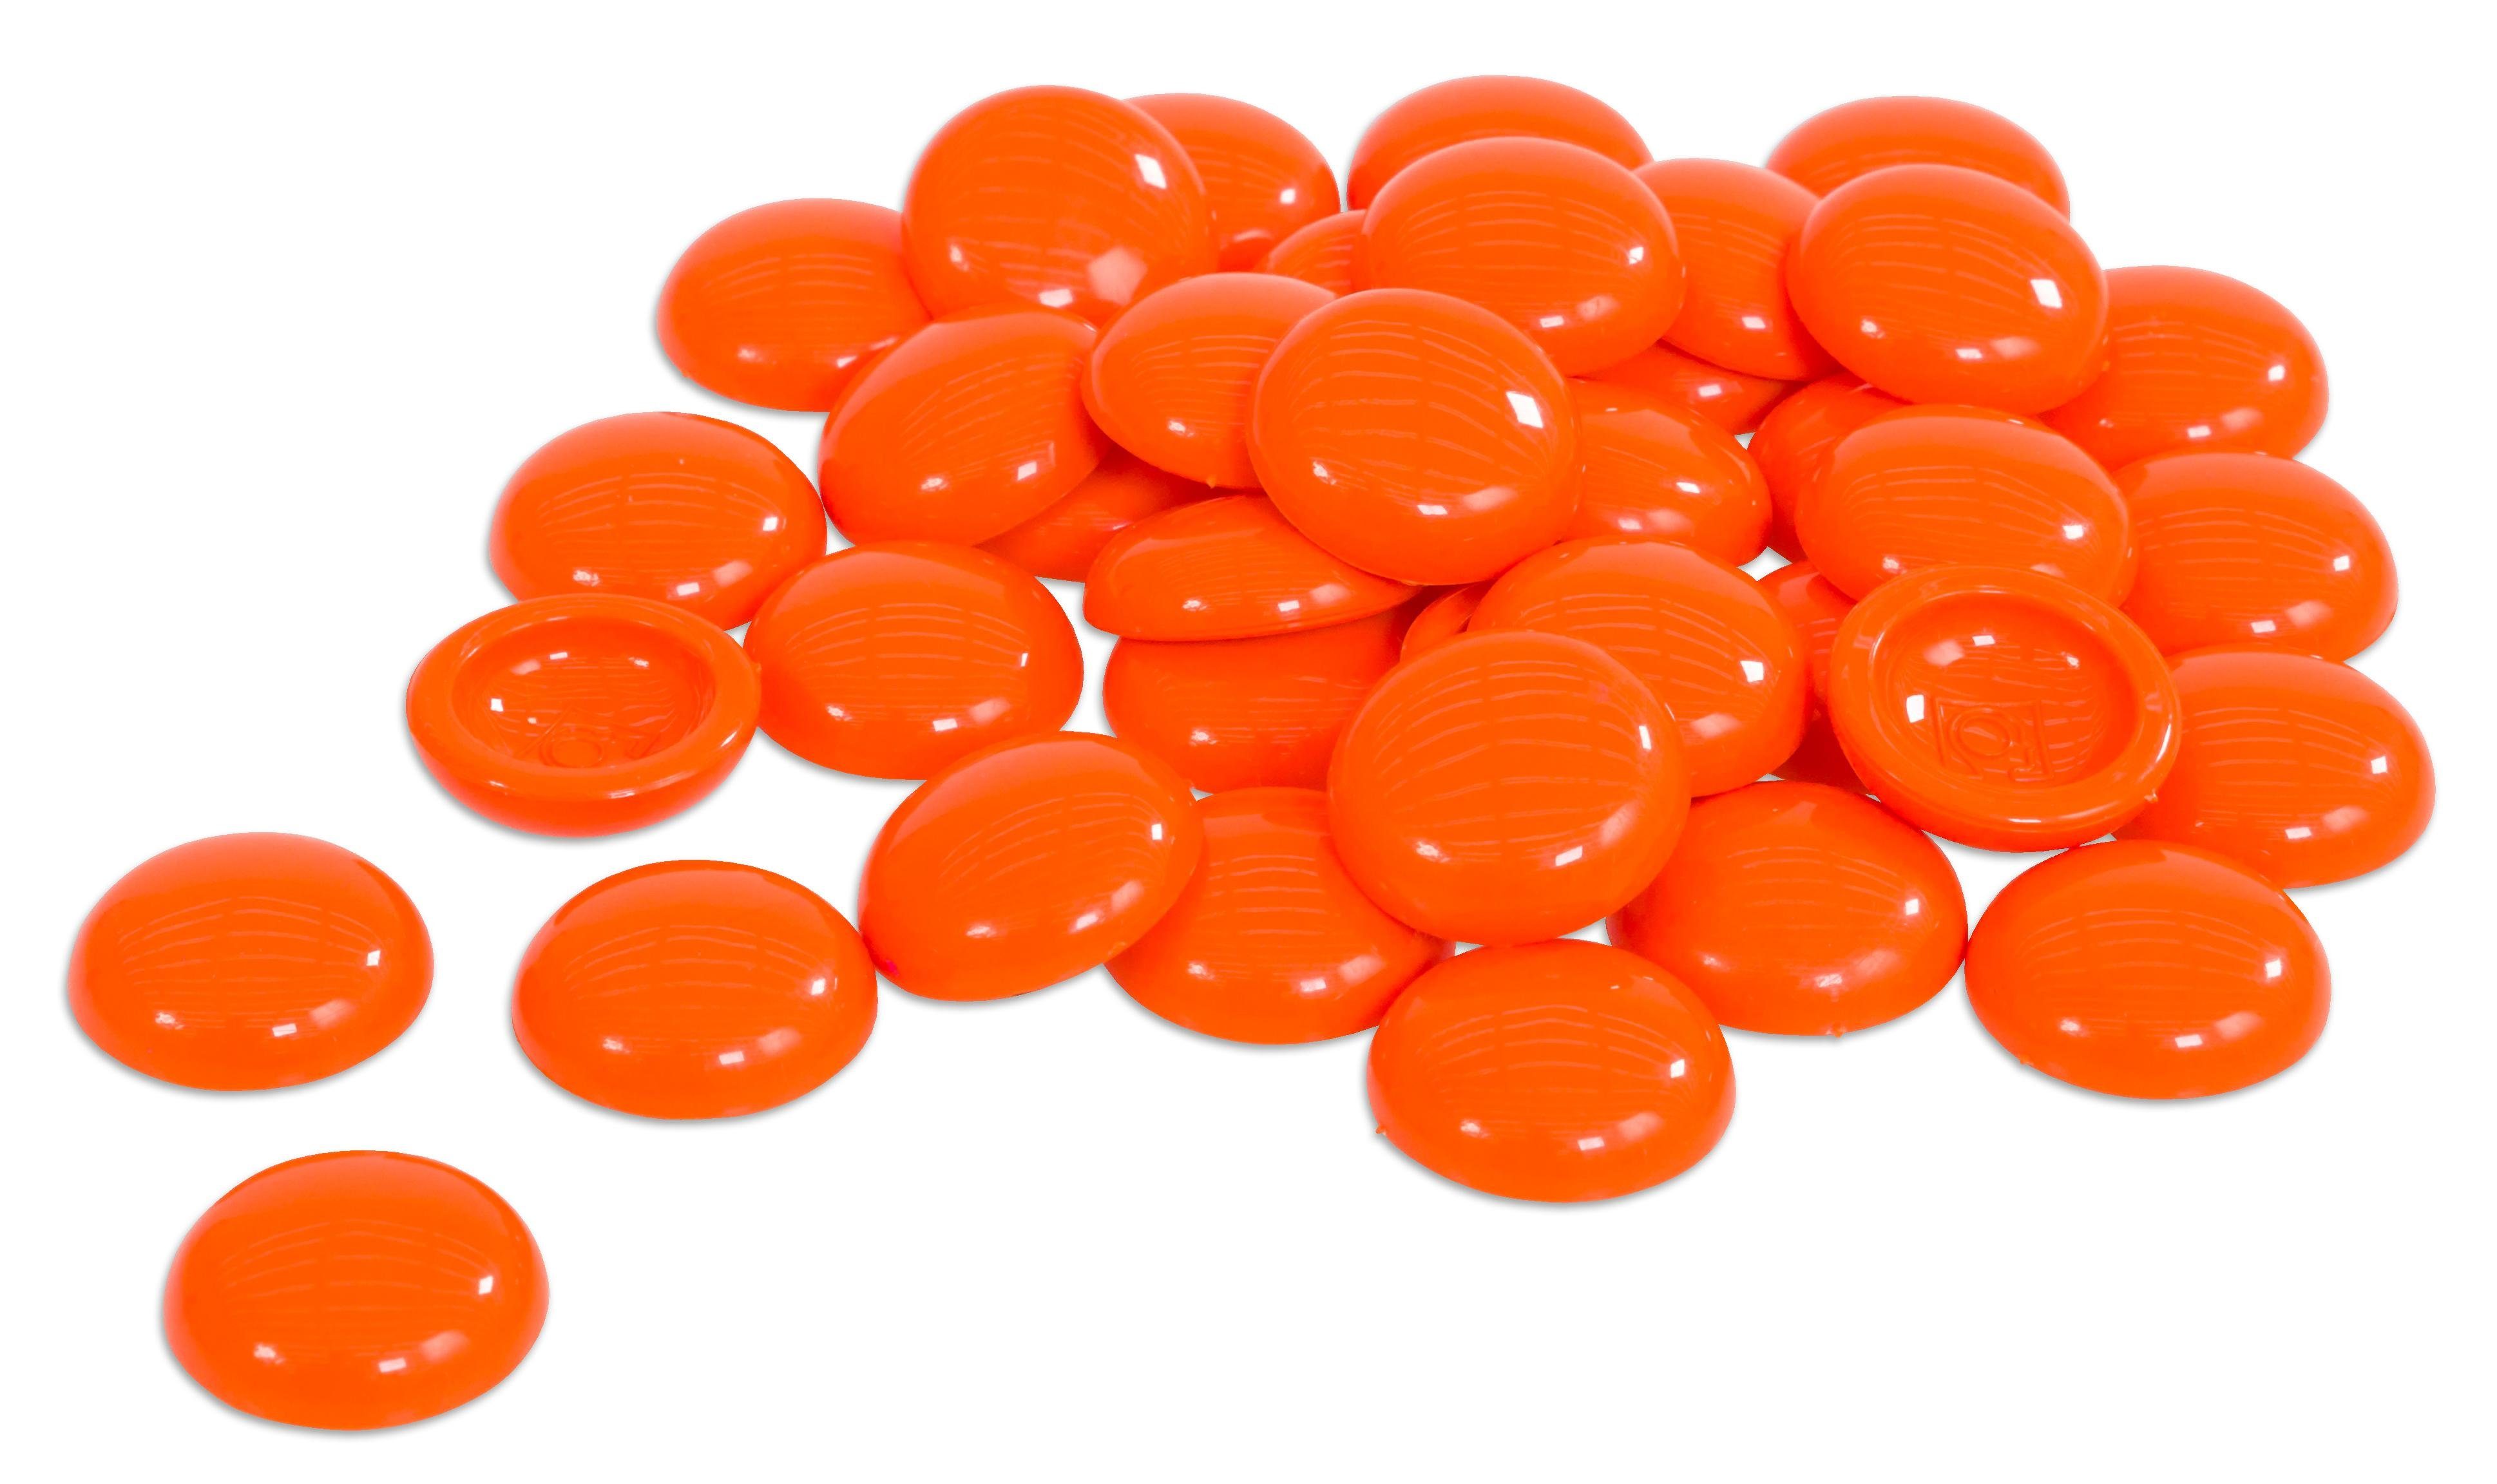 Betzold Lernspielzeug Muggelsteine Ø 20 mm 250 Stück Muggel-Steine bunt orange